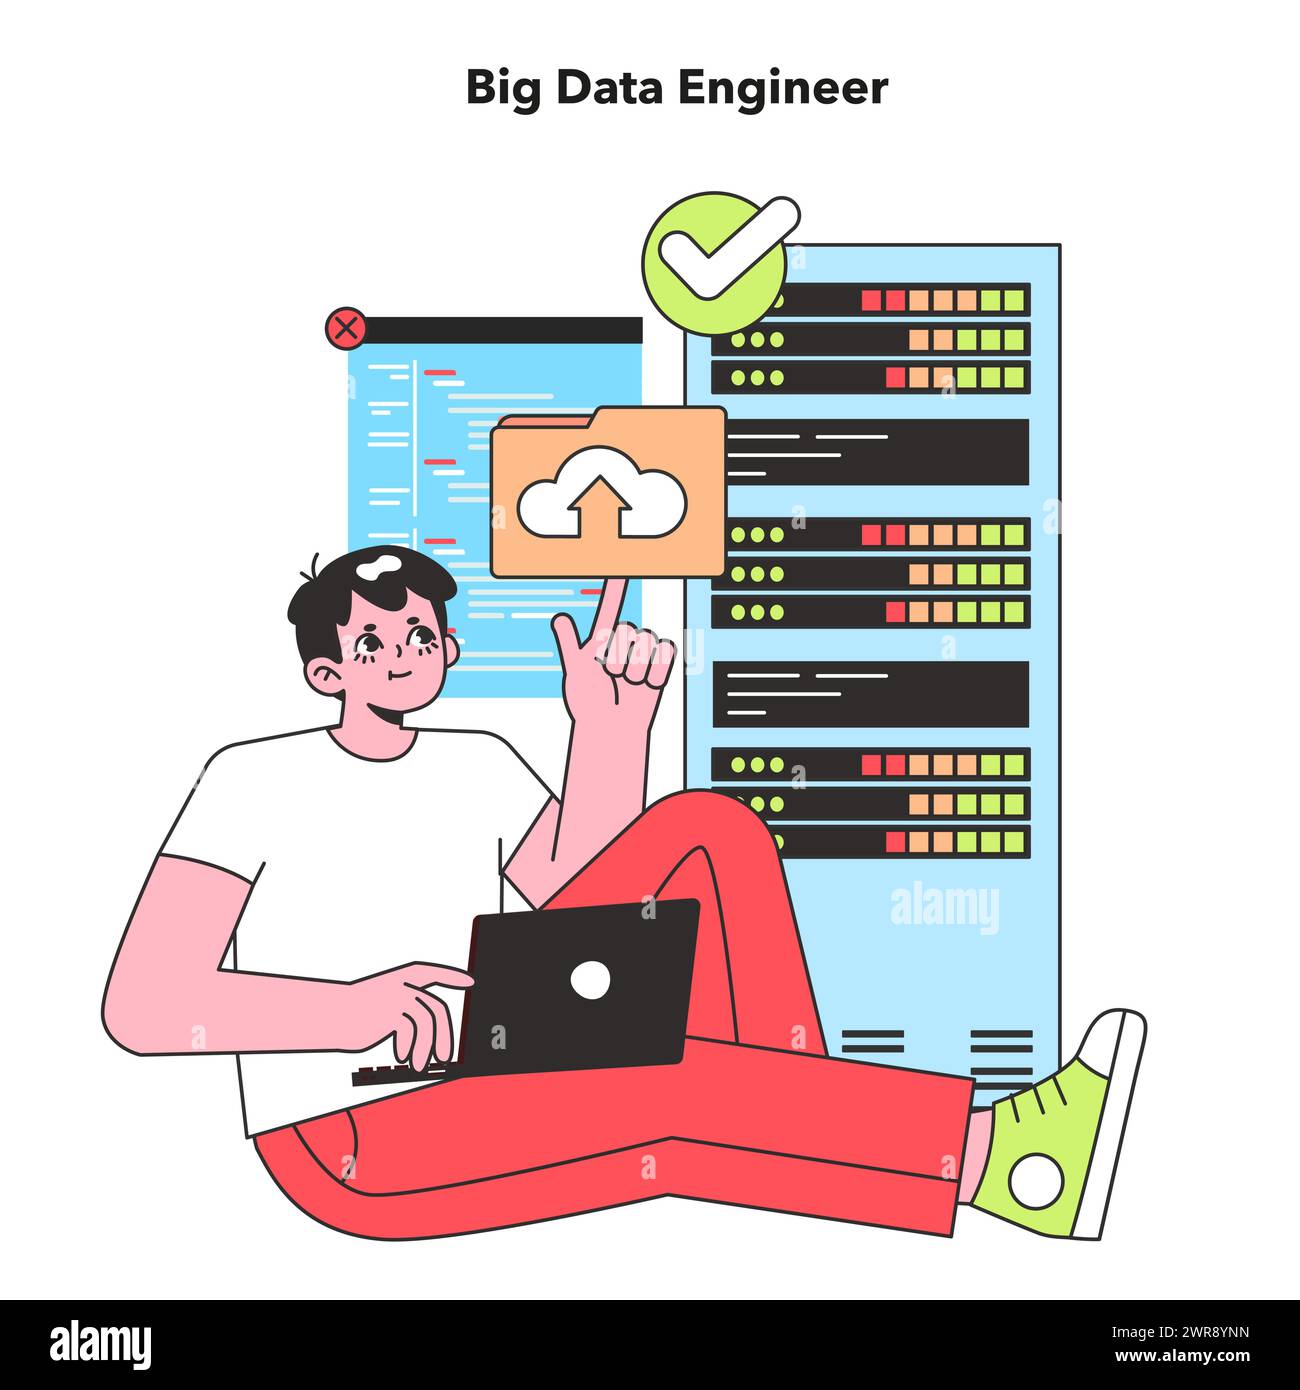 Ein Big Data Engineer wird in entspannter Haltung dargestellt, der große Datensätze zuverlässig verwaltet und die entscheidende Rolle der Datenanalyse in der Technologiebranche symbolisiert. Stock Vektor